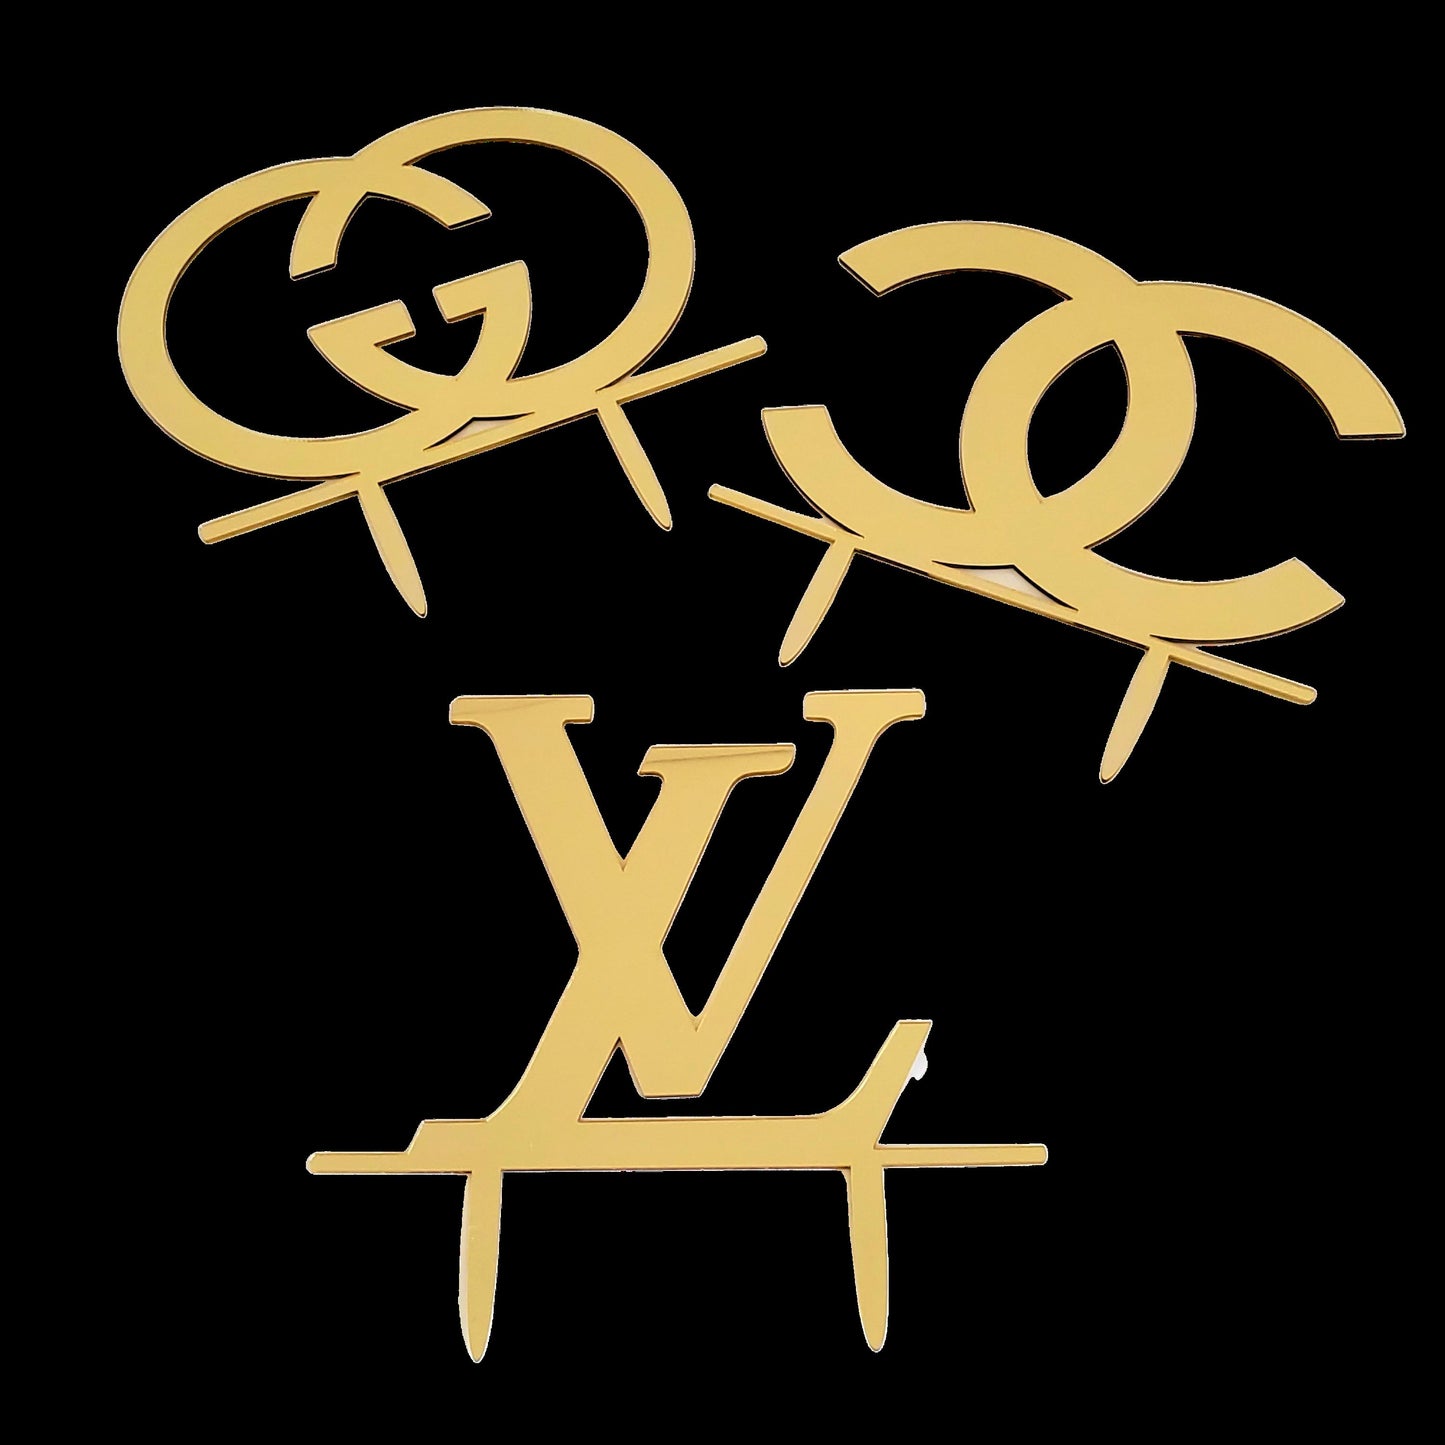 Gucci cake logo LV Logo cake stamp Logo cookie stamp logo cutters